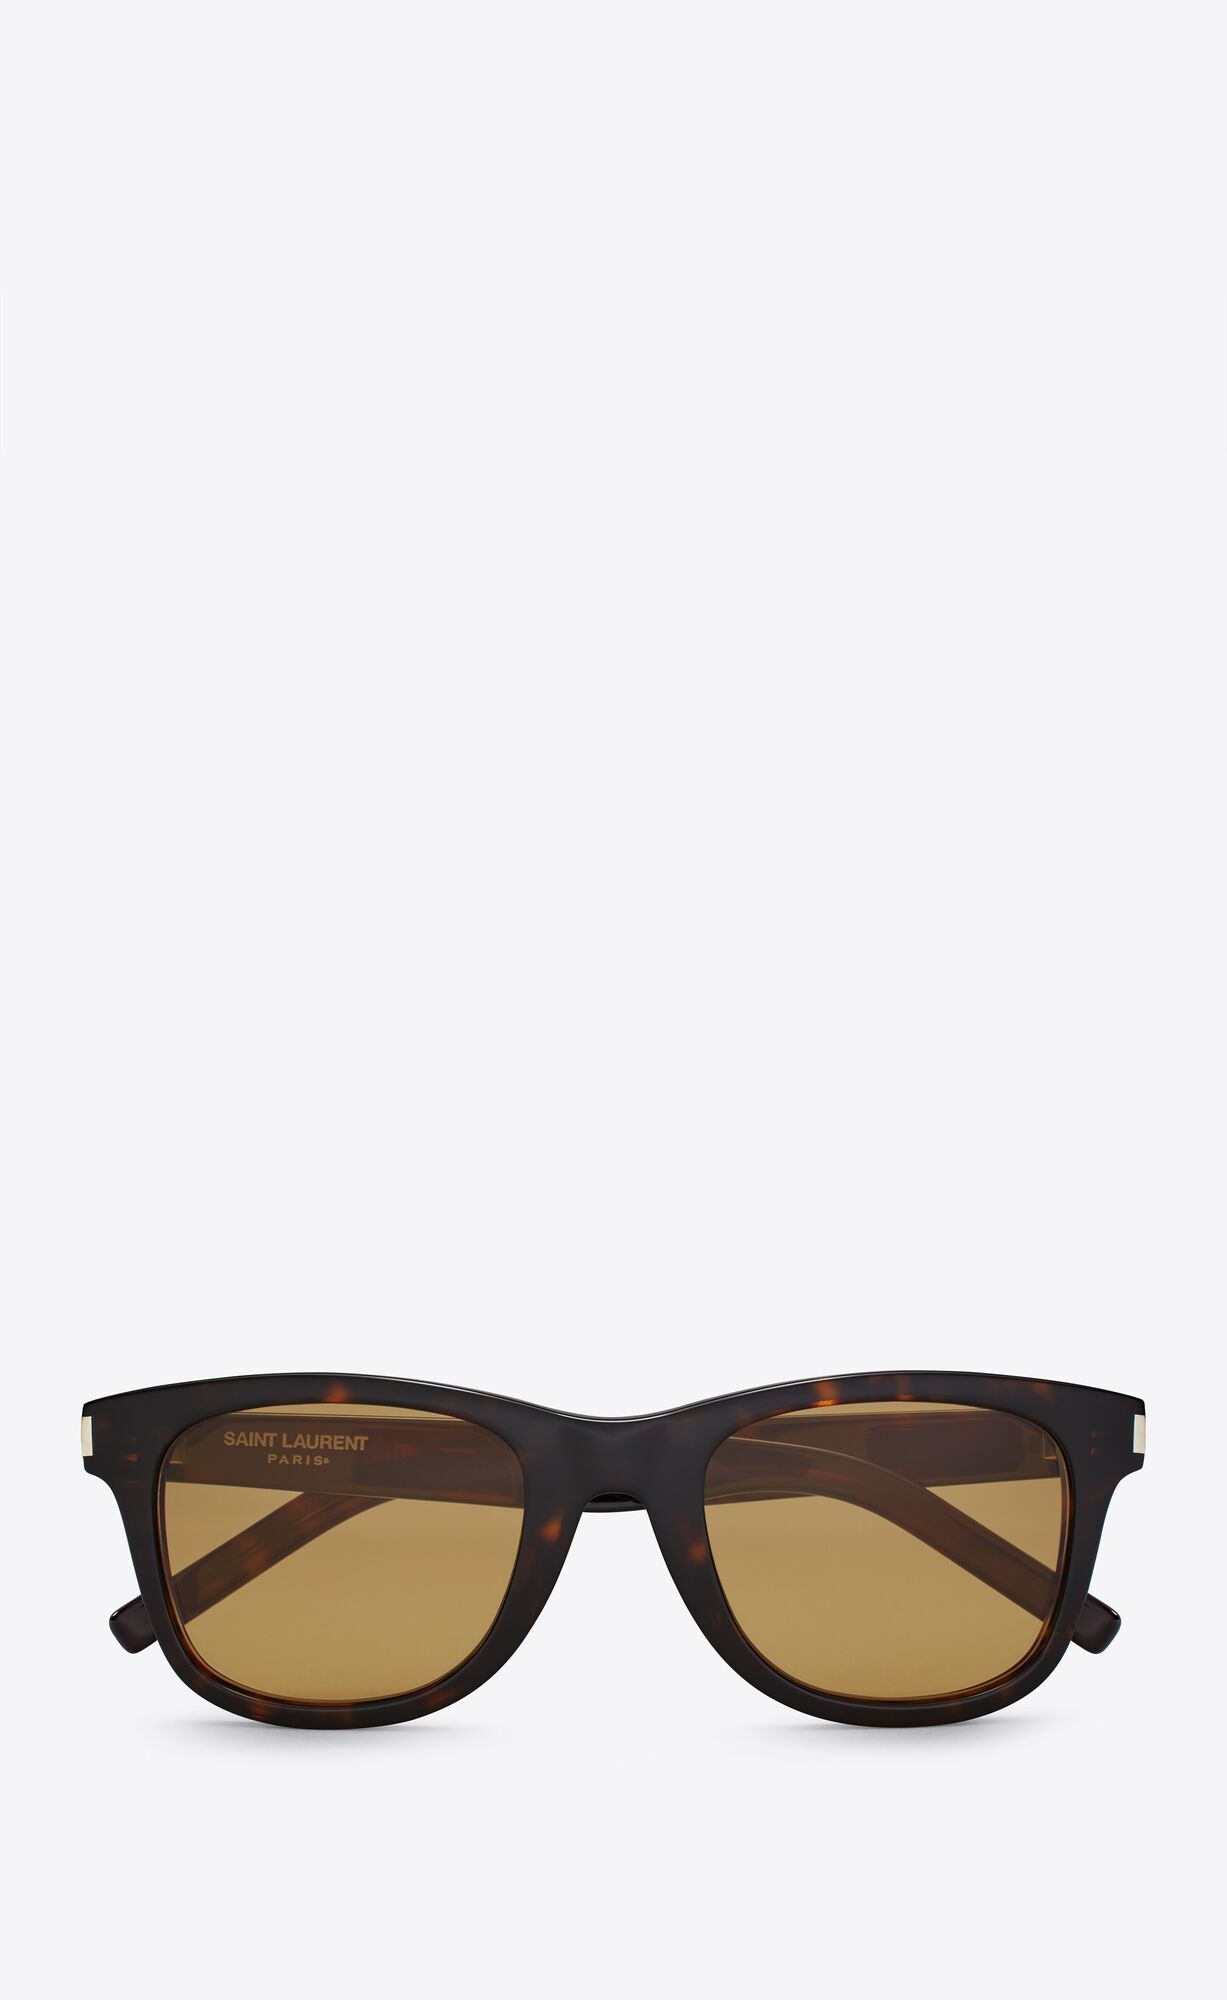 Men's Designer Sunglasses | Mirrored & Classic | Saint Laurent | YSL ...